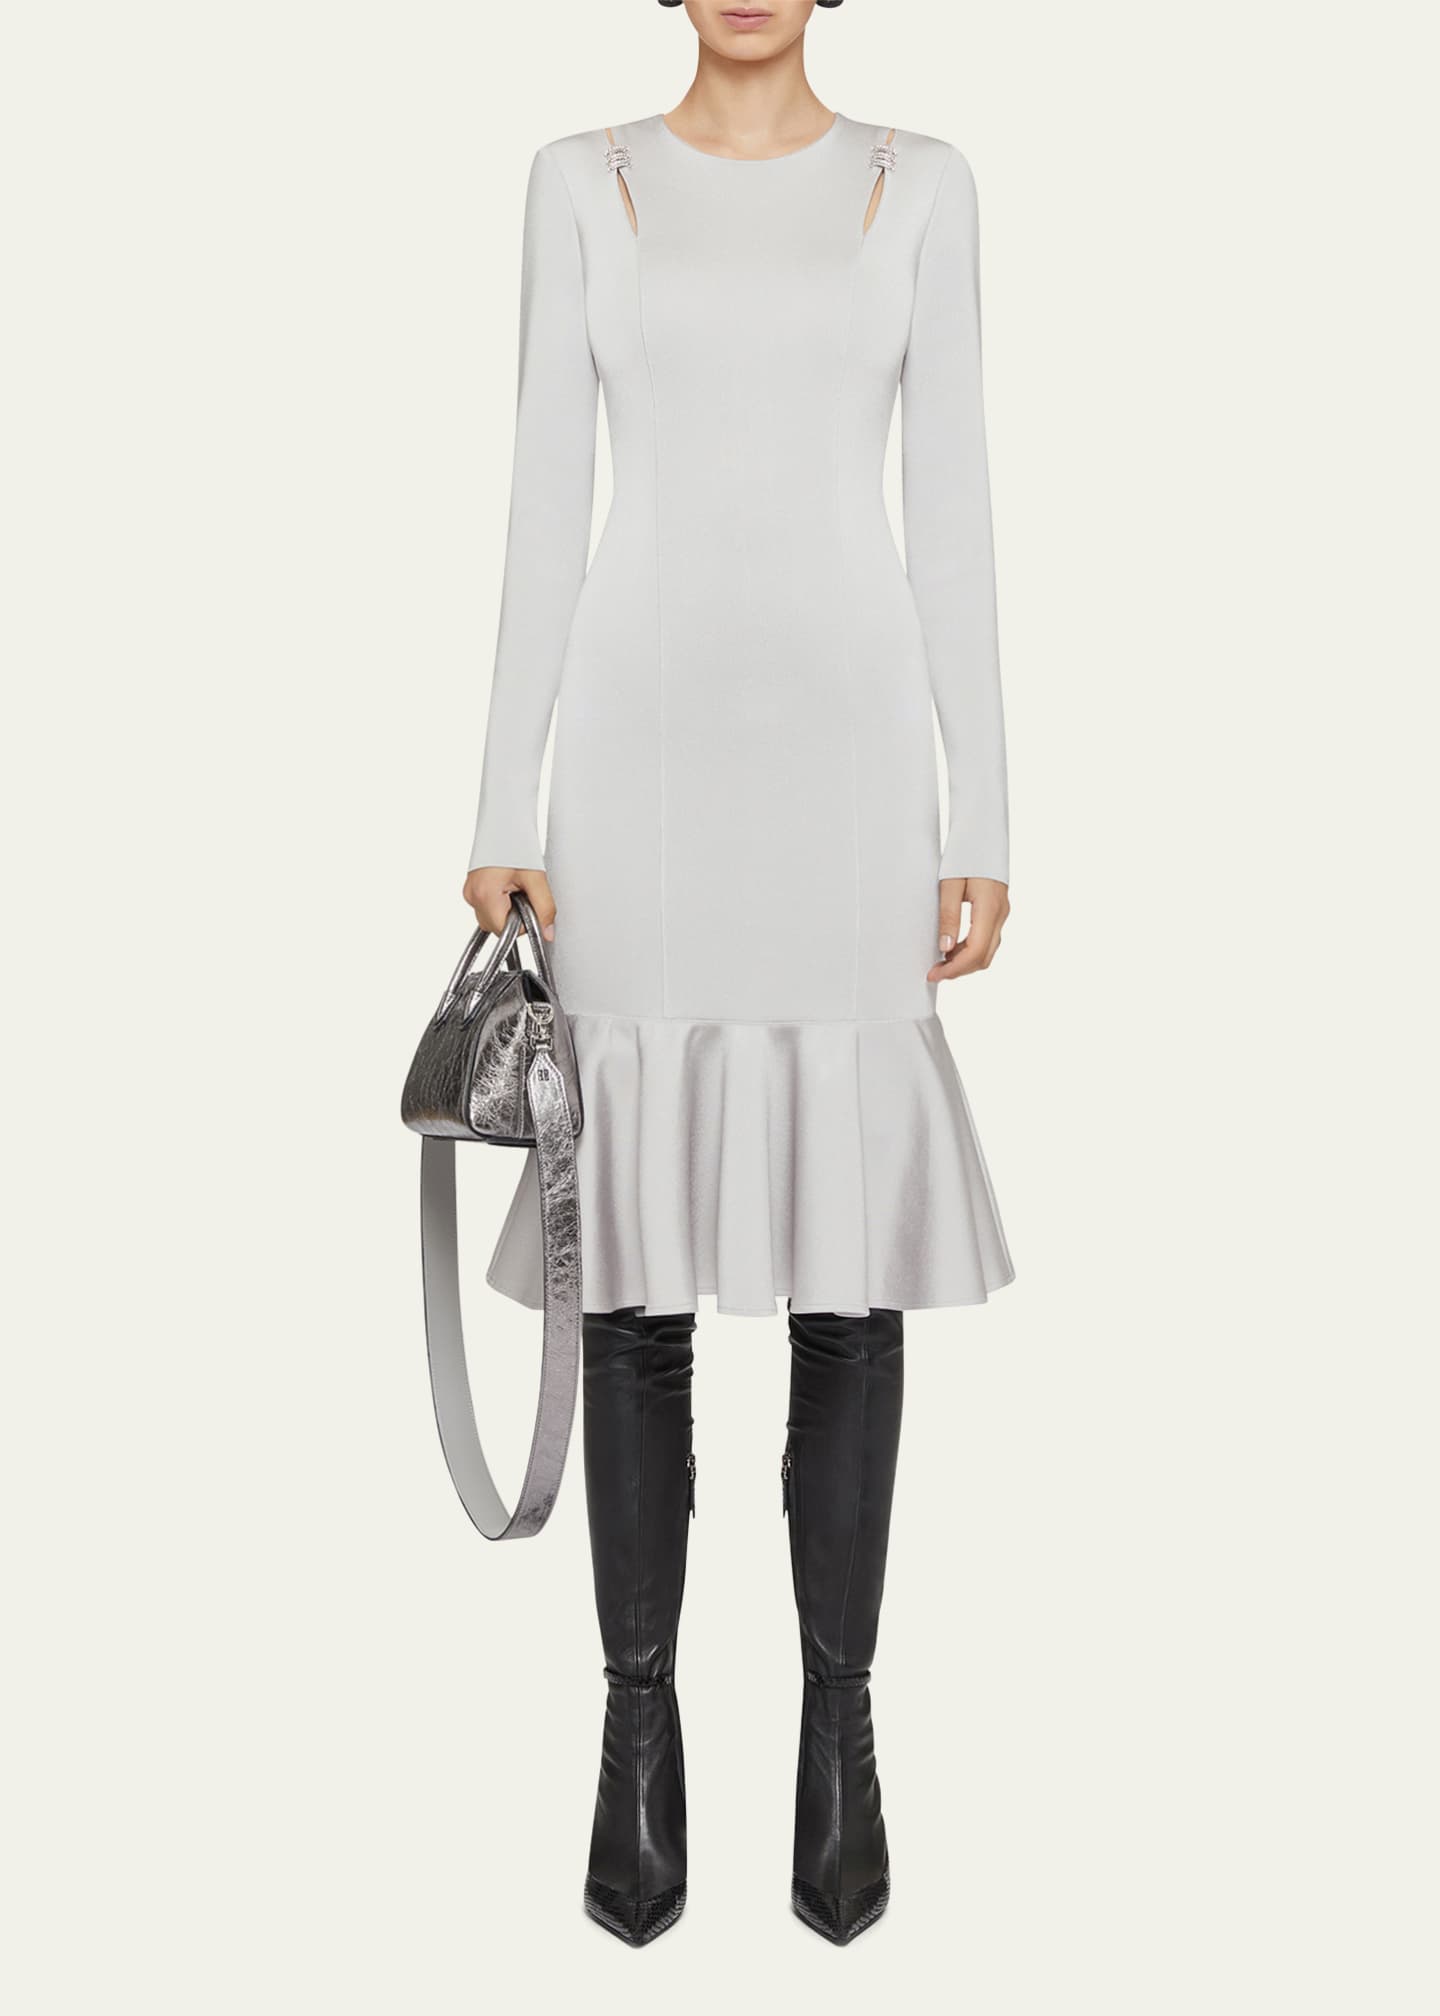 Givenchy Cutouts And Crystal Ring Flounce Hem Midi Dress - Bergdorf Goodman